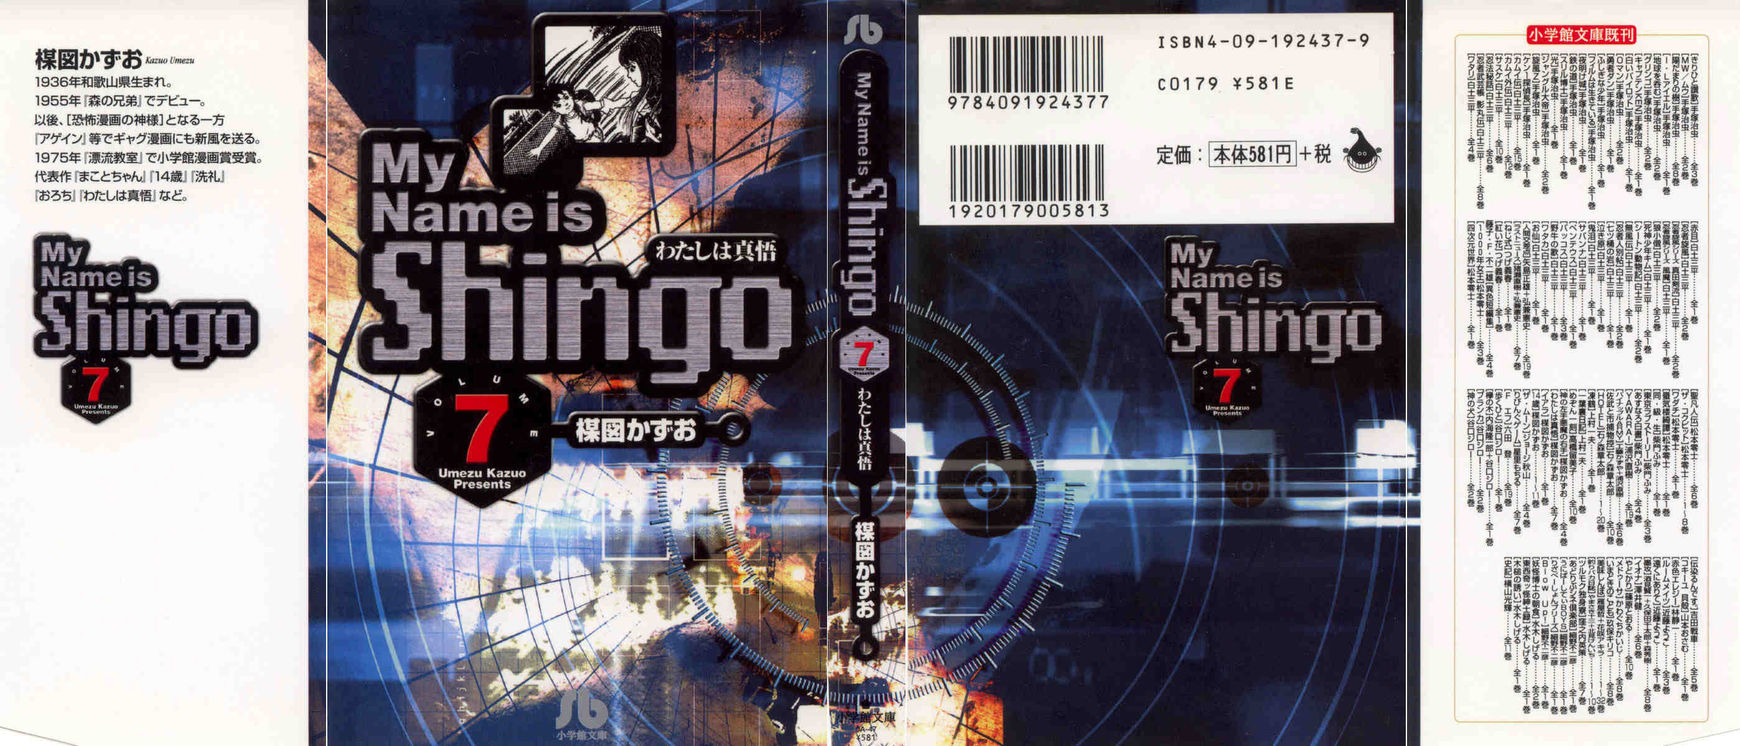 My Name Is Shingo 7